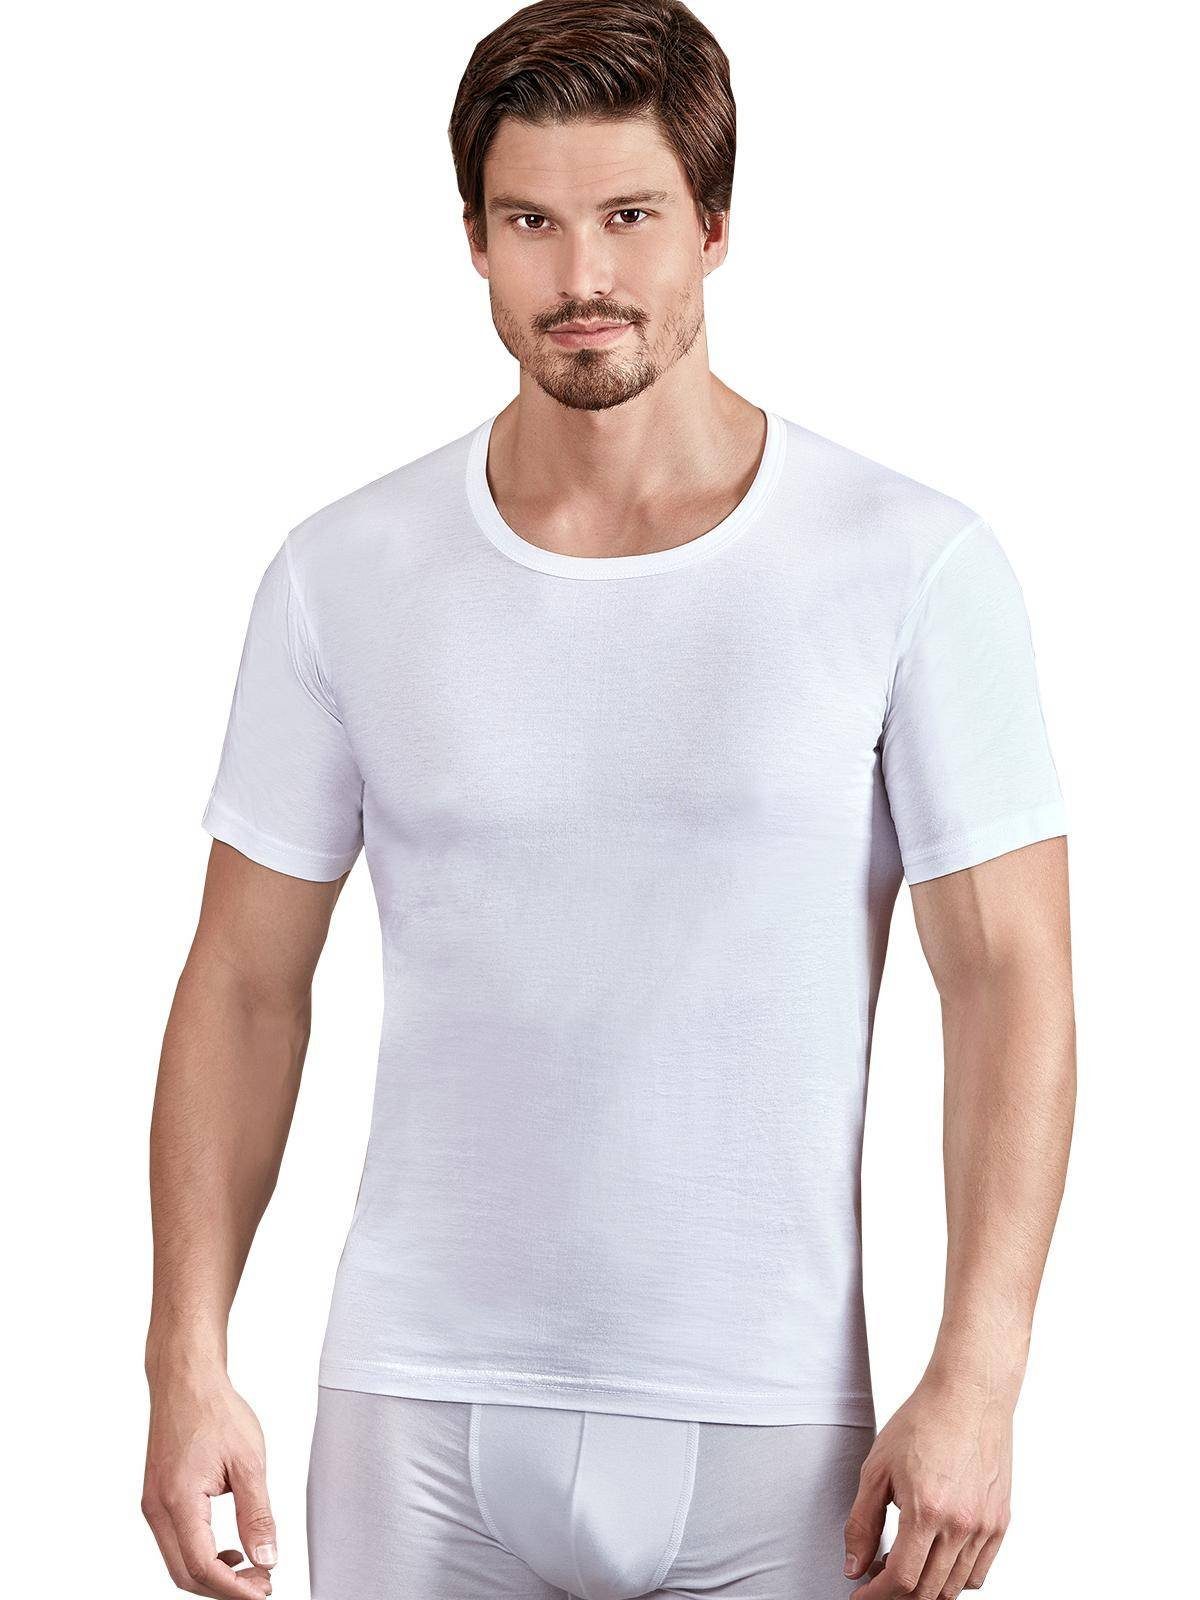 Berrak Collection Unterhemd Kurzarm Rundhals Herren Jersey Business Shirt,  Slim fit Weiß, BS1024